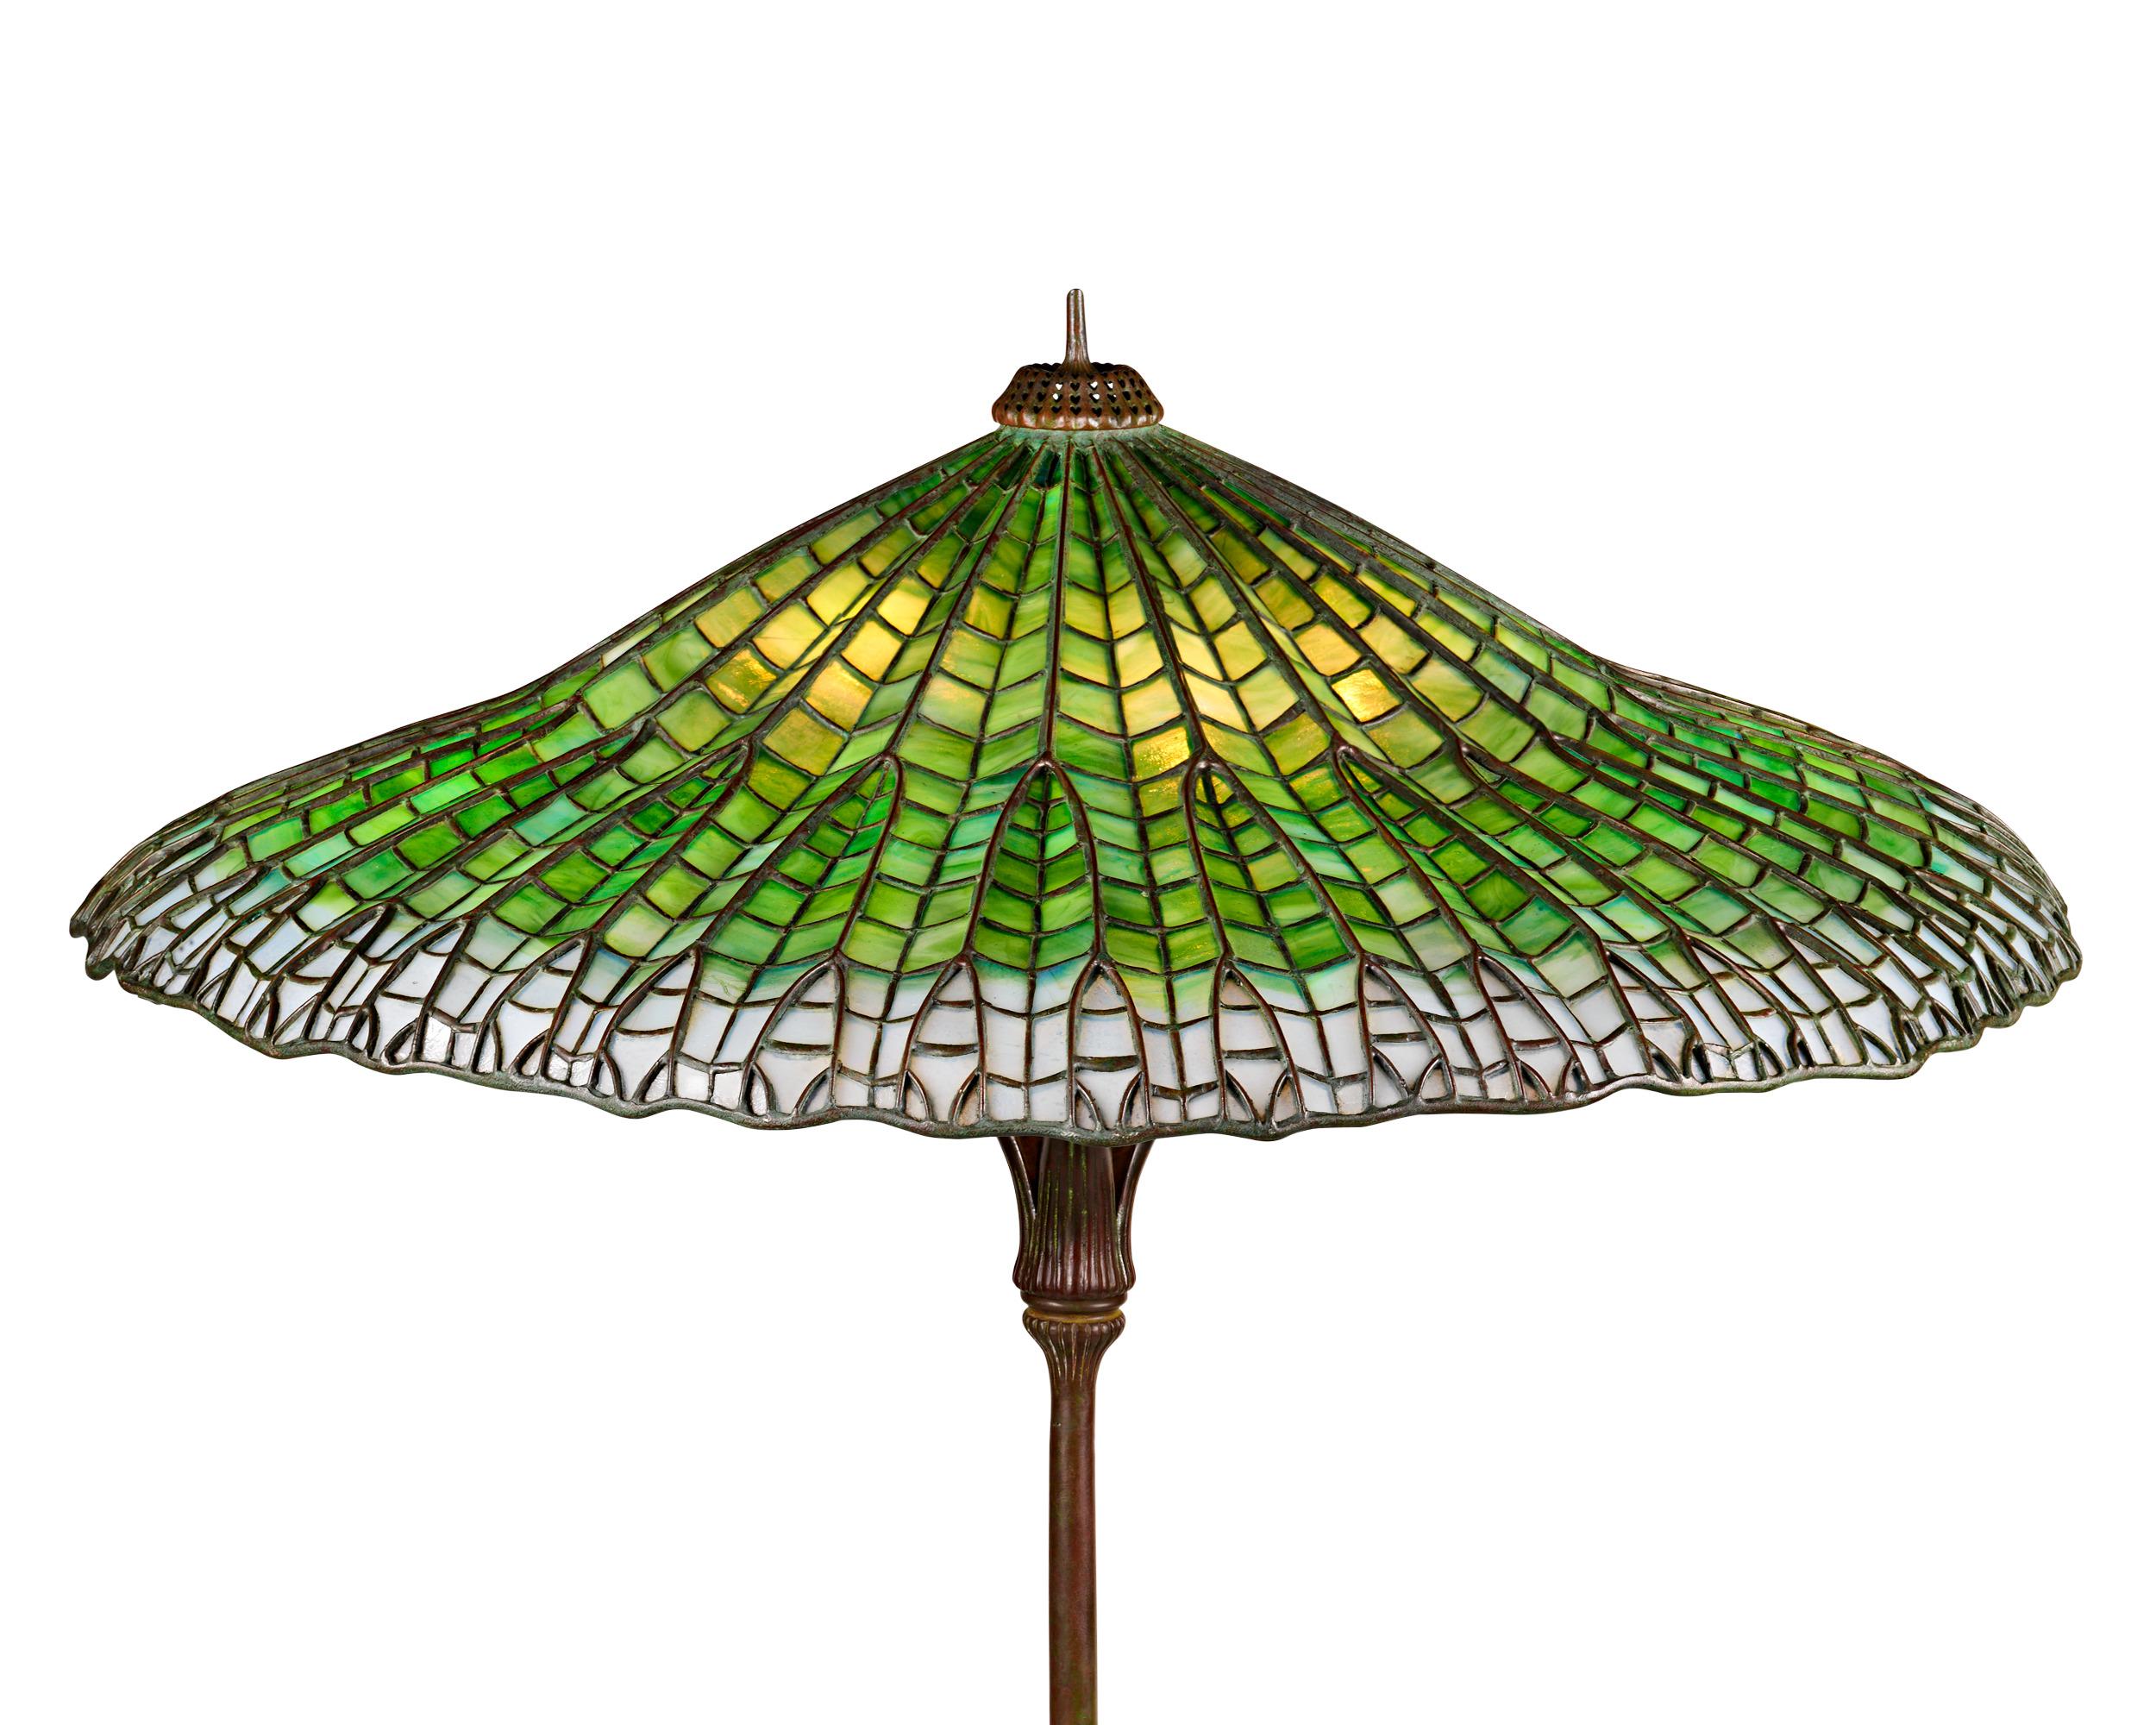 Diese Tischleuchte aus geometrischem Bleiglas und Bronze der Tiffany Studios zeichnet sich durch den ikonischen Lotus-Pagoden-Schirm und den dazu passenden Original-Bronze-Sockel aus. Die elegante Form des vom Lotus inspirierten Schirms verbindet